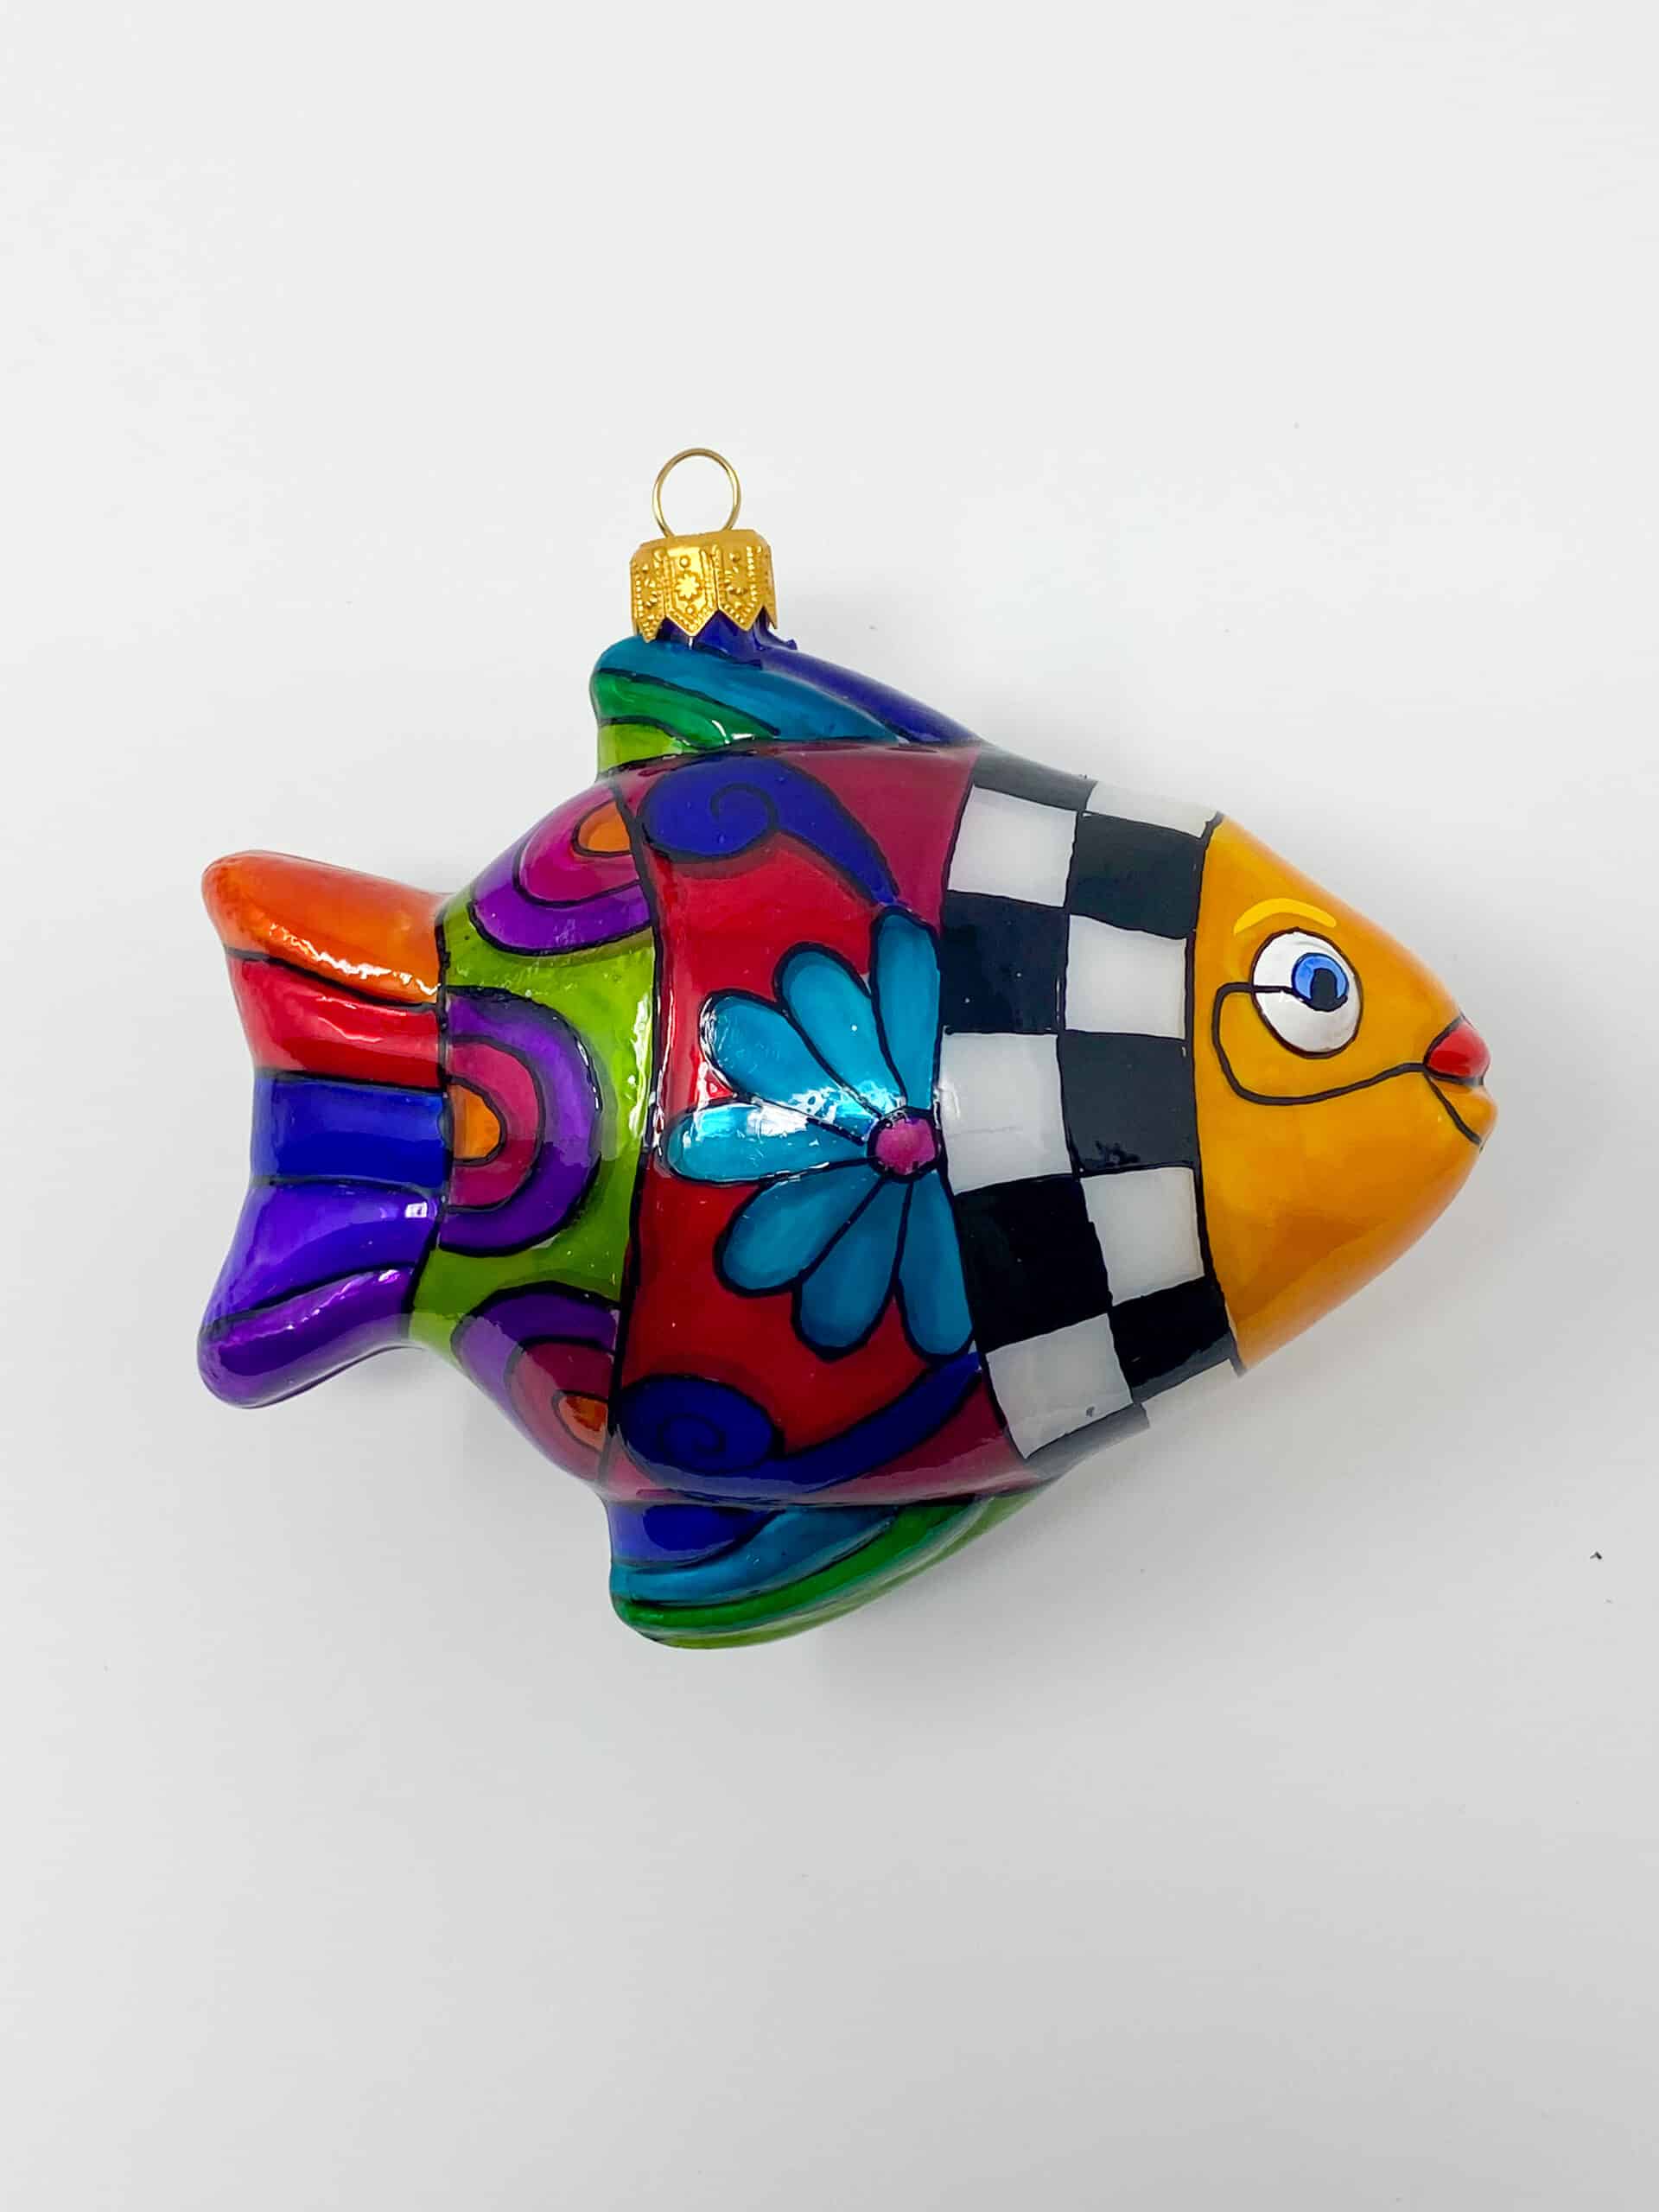 Talavera Fish Ornament glass blown